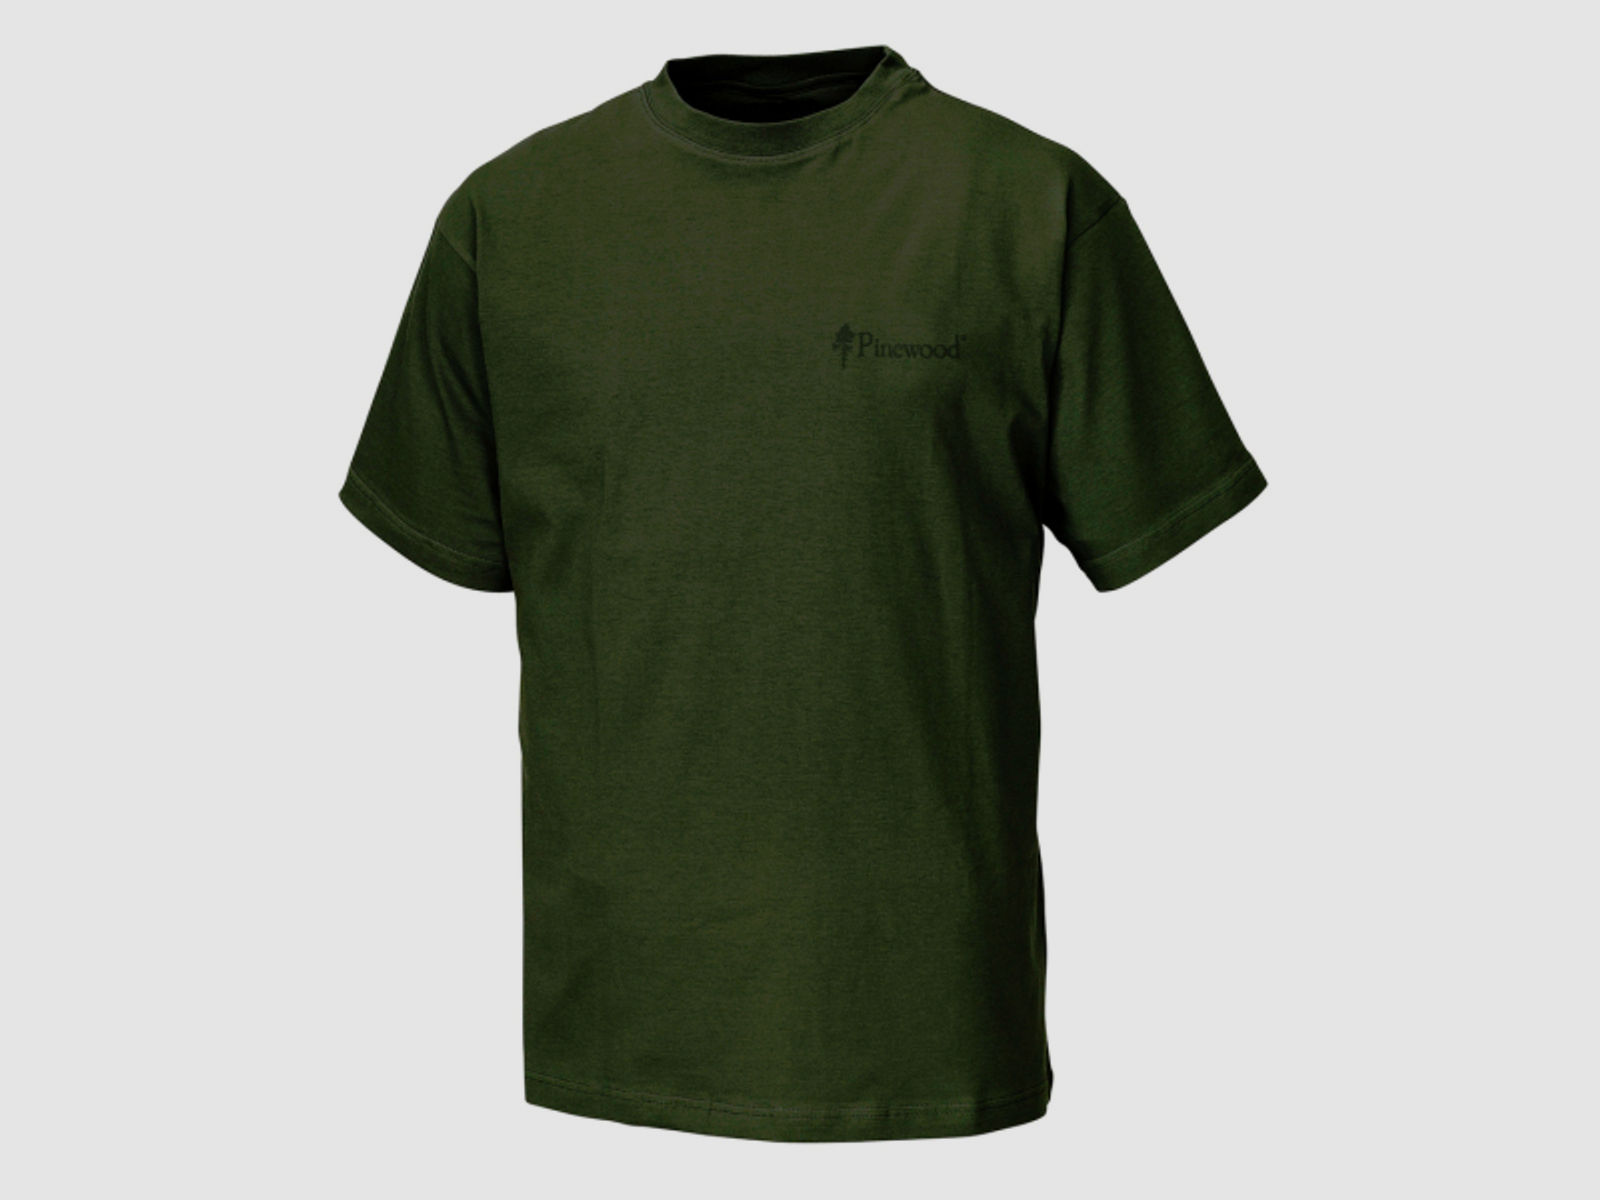 -60% ! Pinewood Baumwoll T-Shirt "DOPPELPACK" grün 90% Baumwolle Rundhals, 2 Shirts in der Größe S